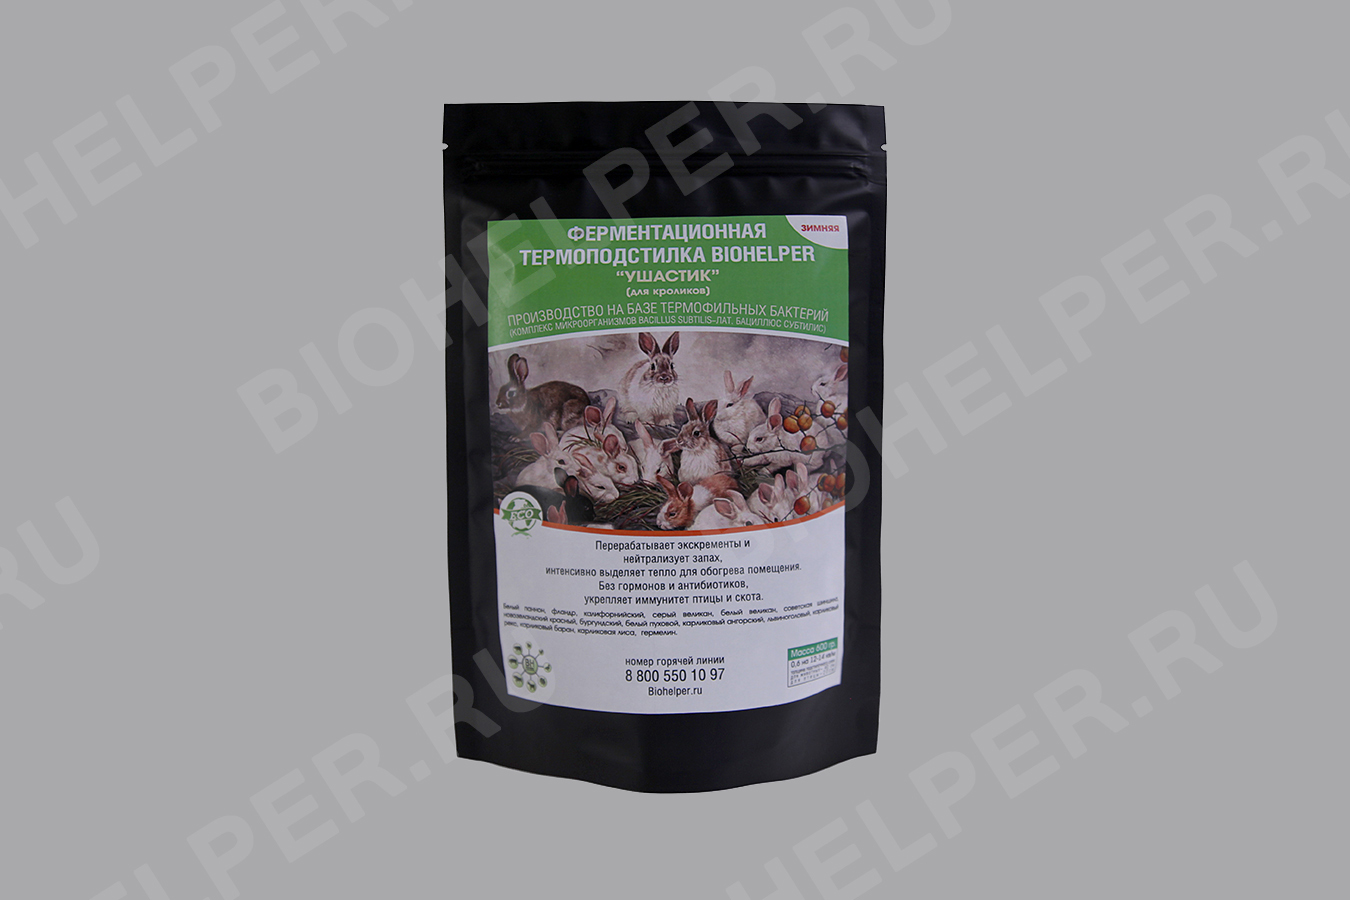 Ферментационная биоподстилка (бактерии) для содержания кроликов и пушных зверей "Биохелпер Ушастик" - Зимняя 600 гр